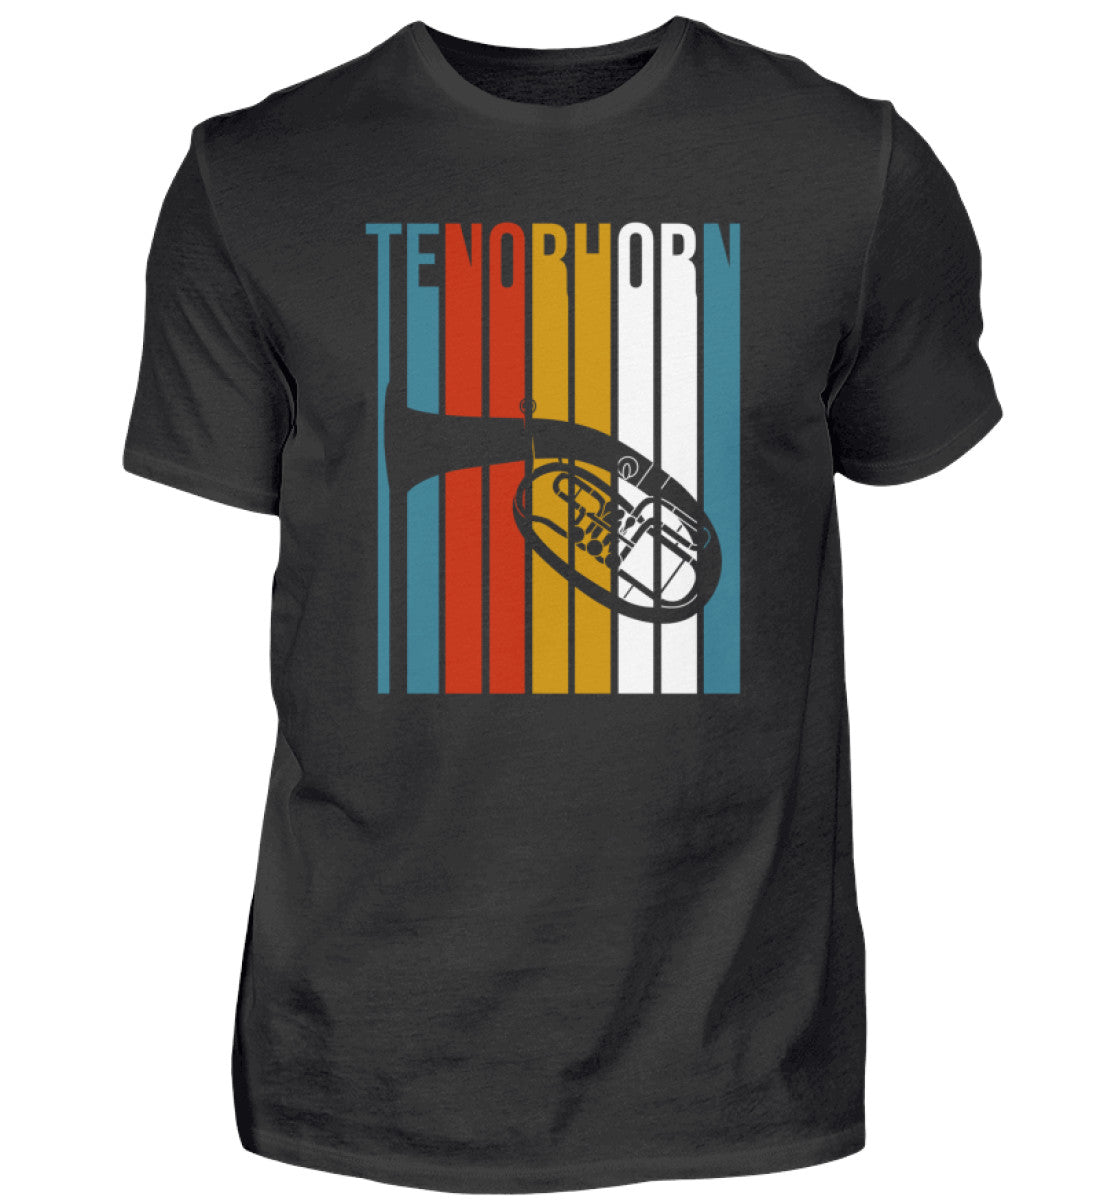 Tenorhorn T-Shirt